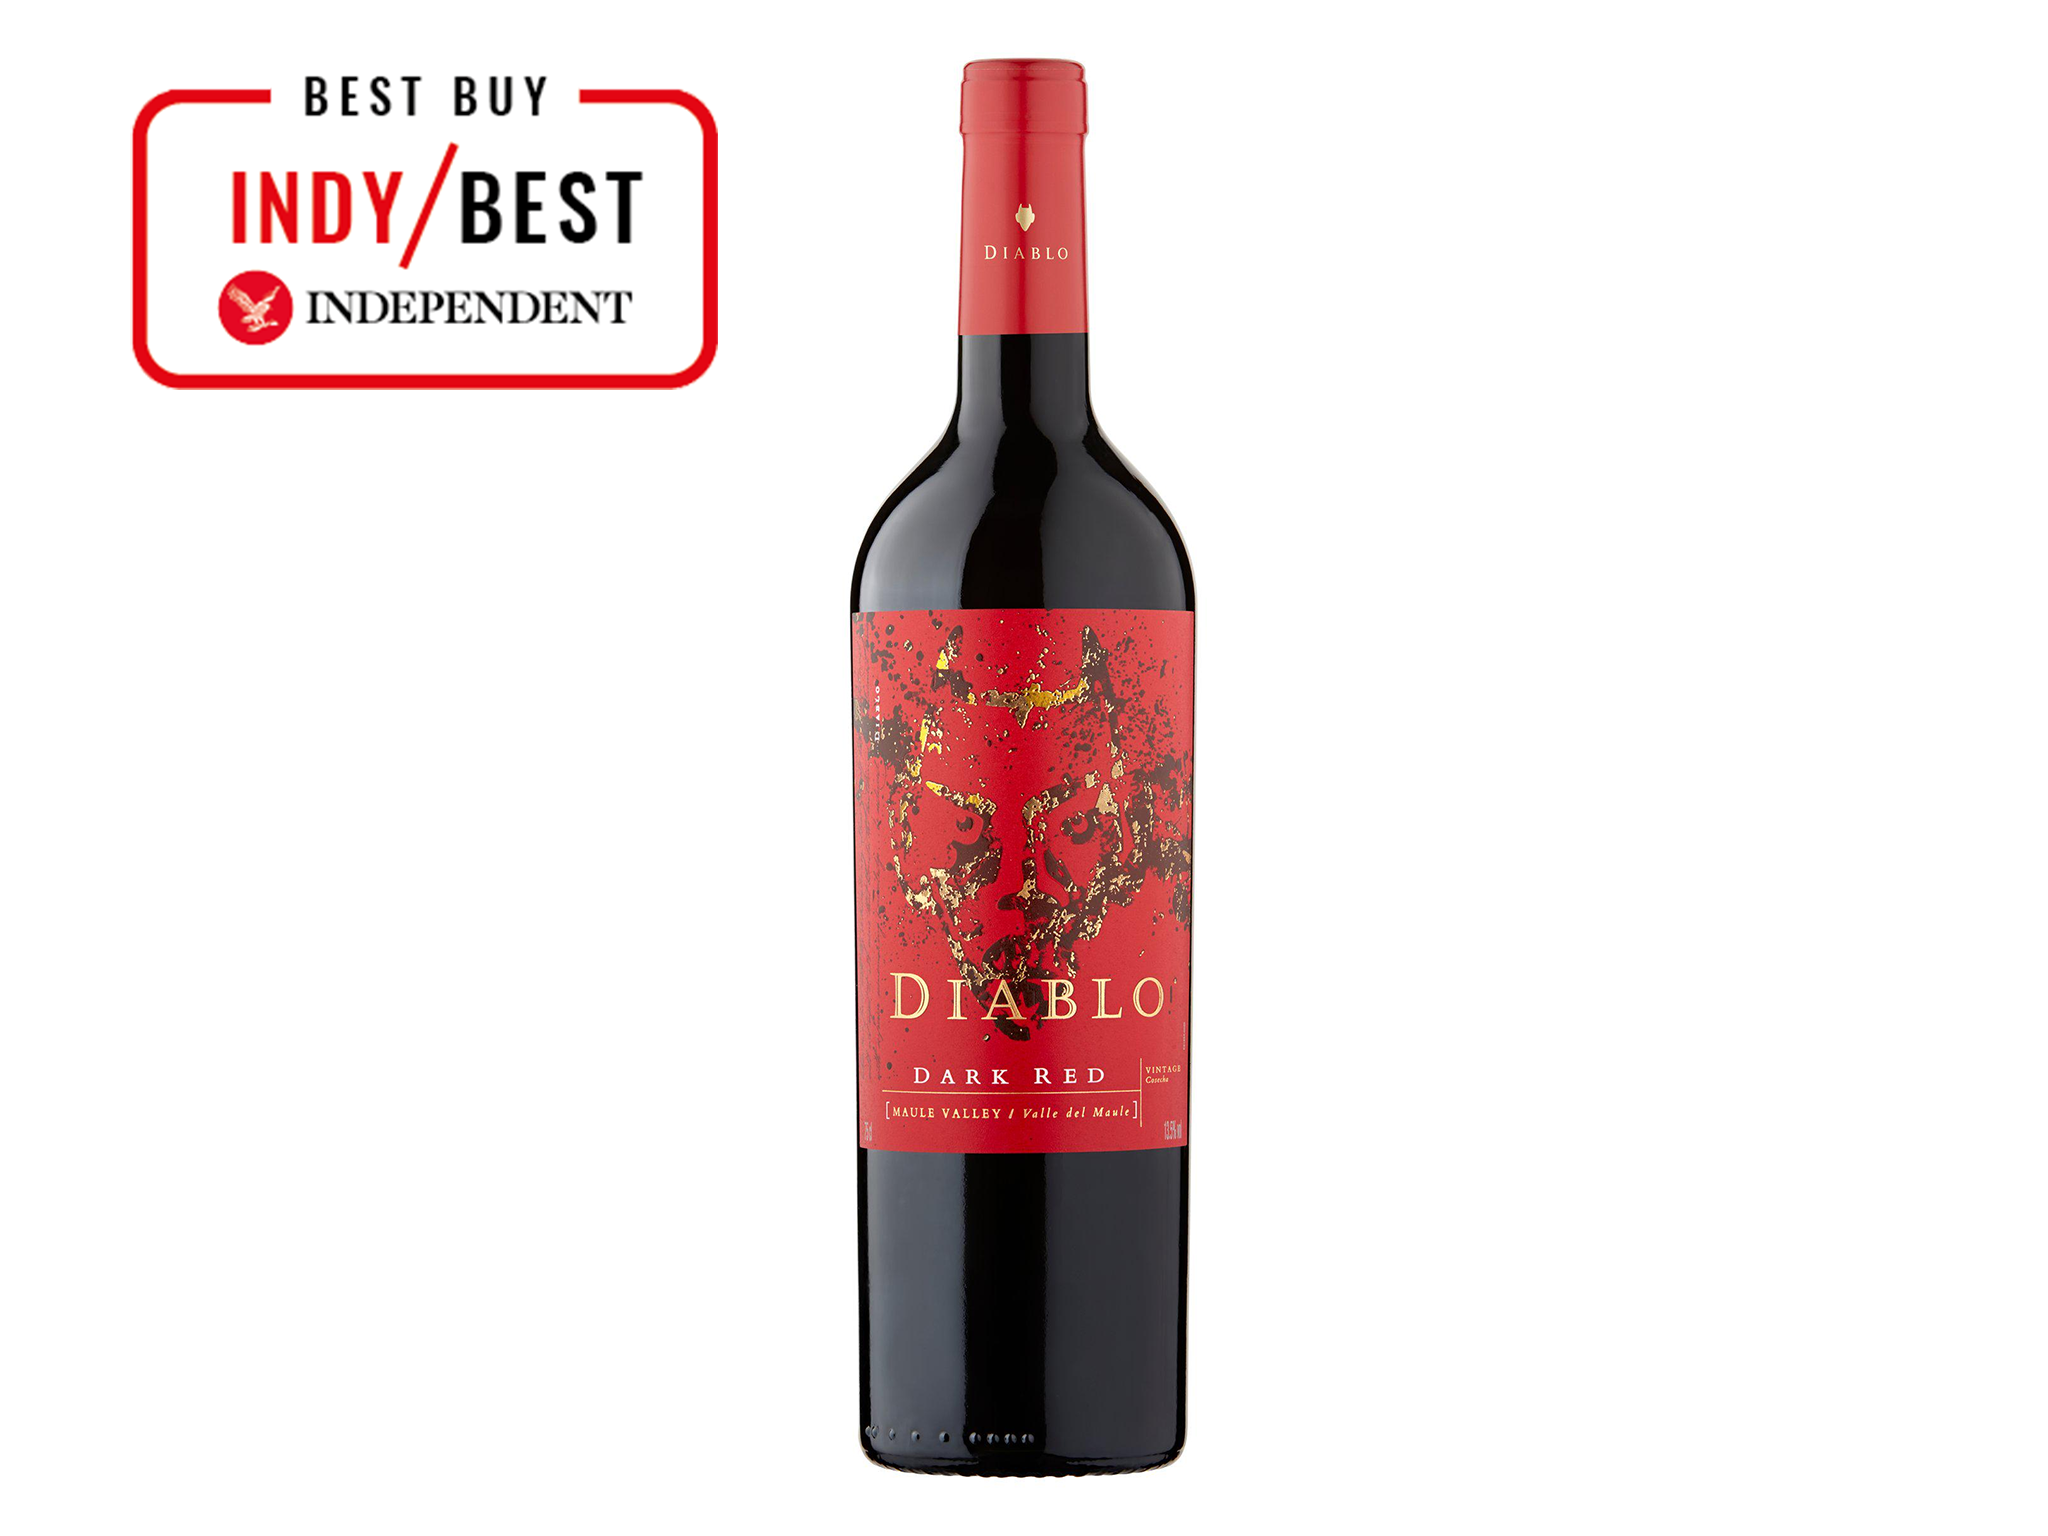 best red wine indybest review Diablo dark red